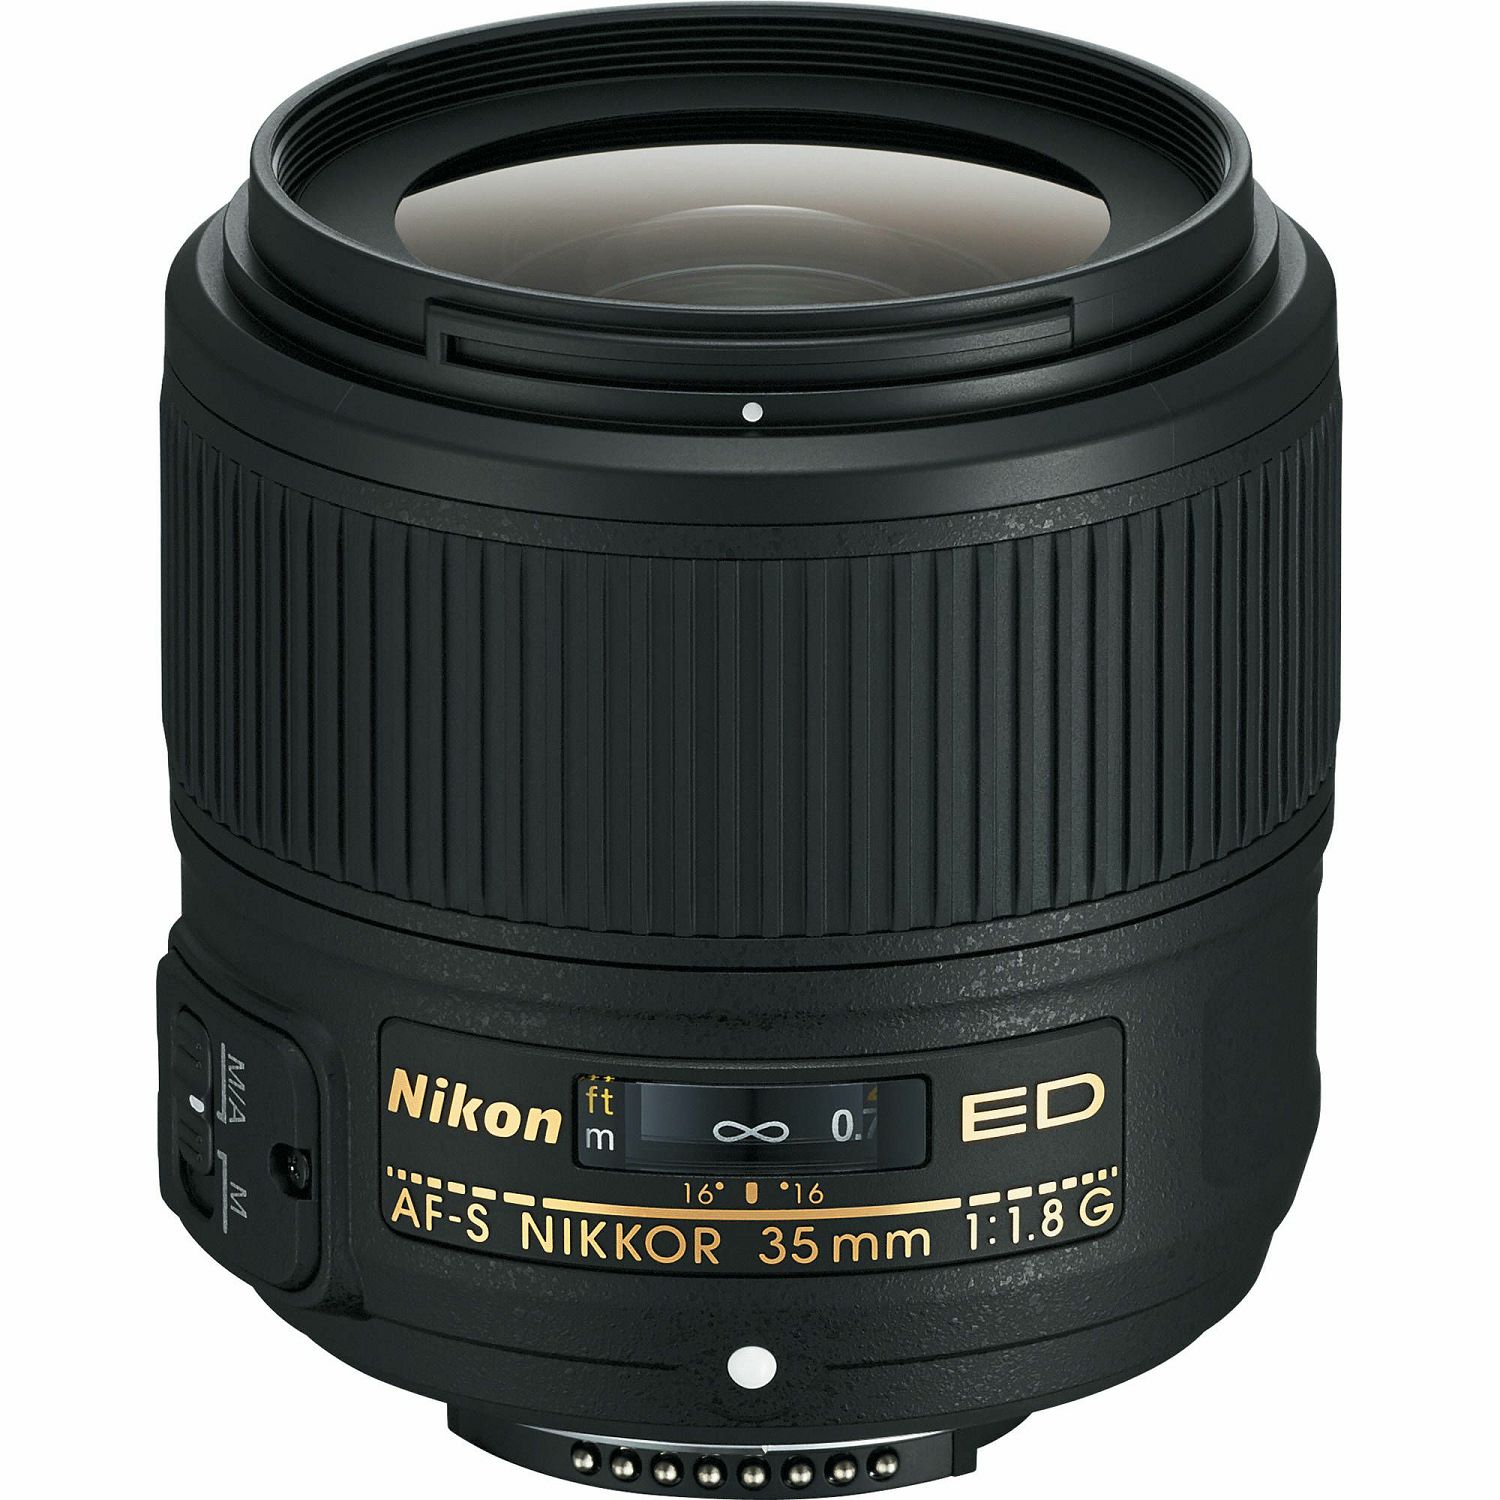 Nikon D7500 + 35mm 1.8G KIT DSLR digitalni fotoaparat i objektiv Nikkor